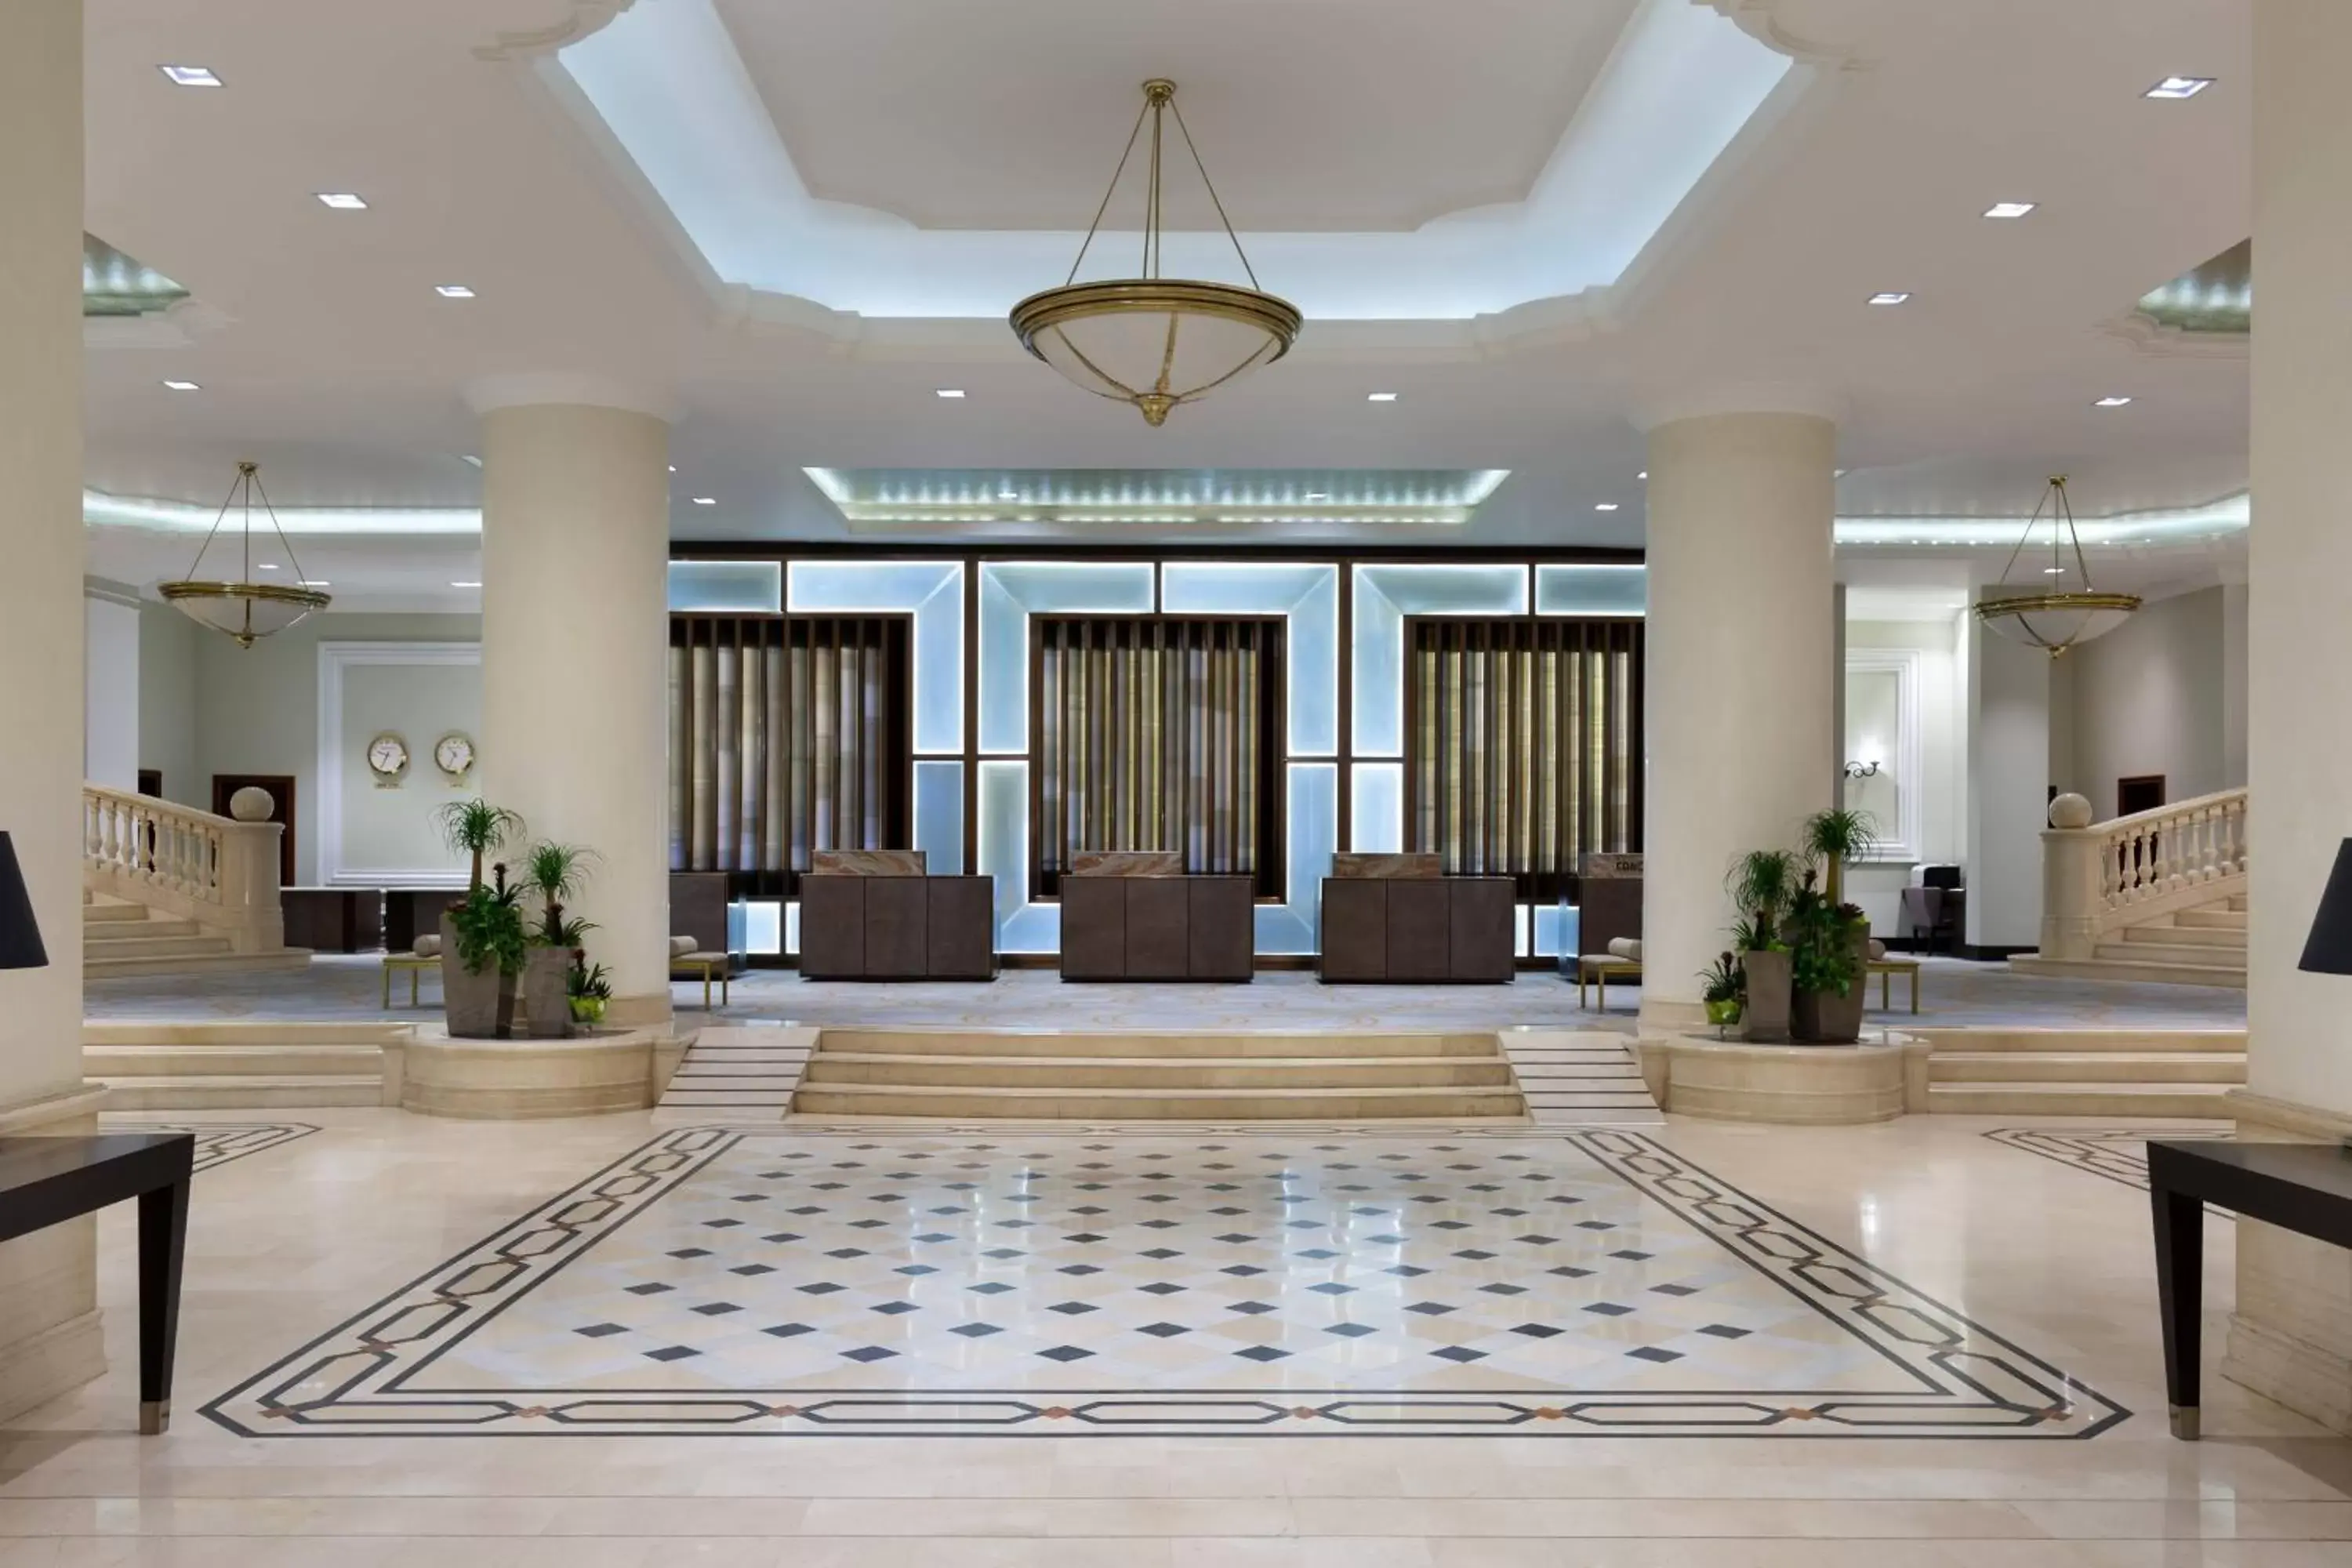 Lobby or reception, Lobby/Reception in JW Marriott Bucharest Grand Hotel